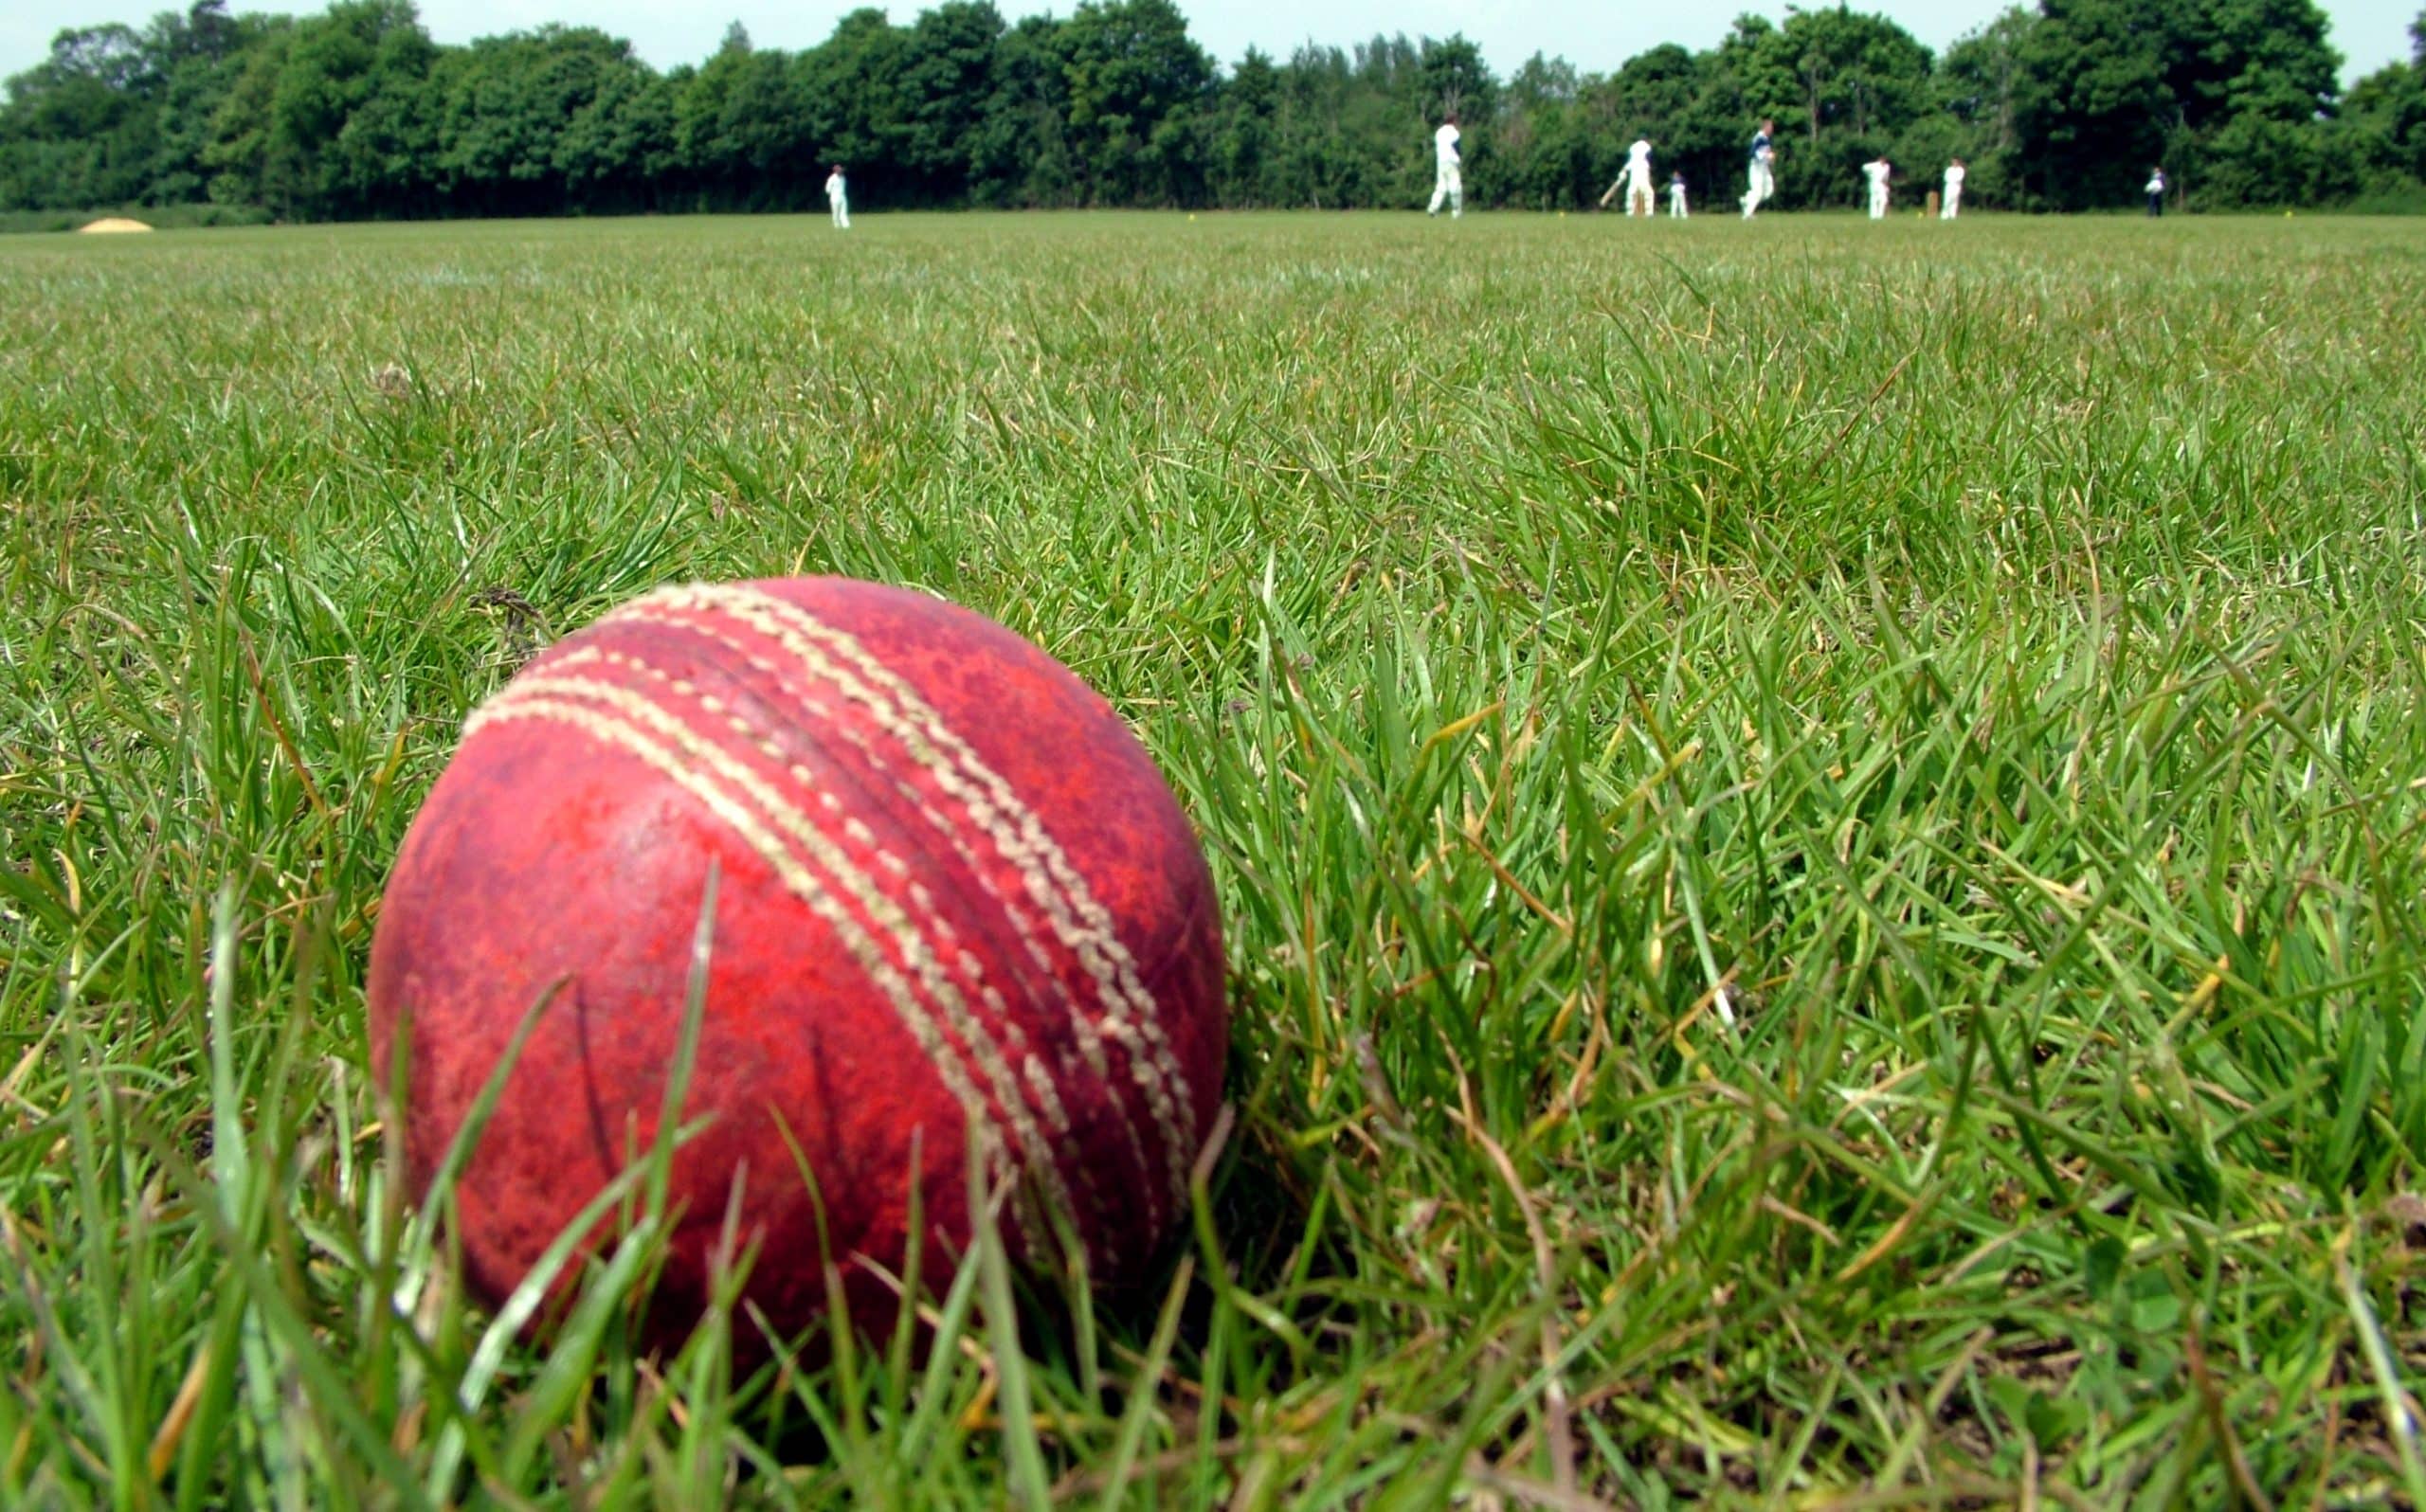 Cricket ball close up